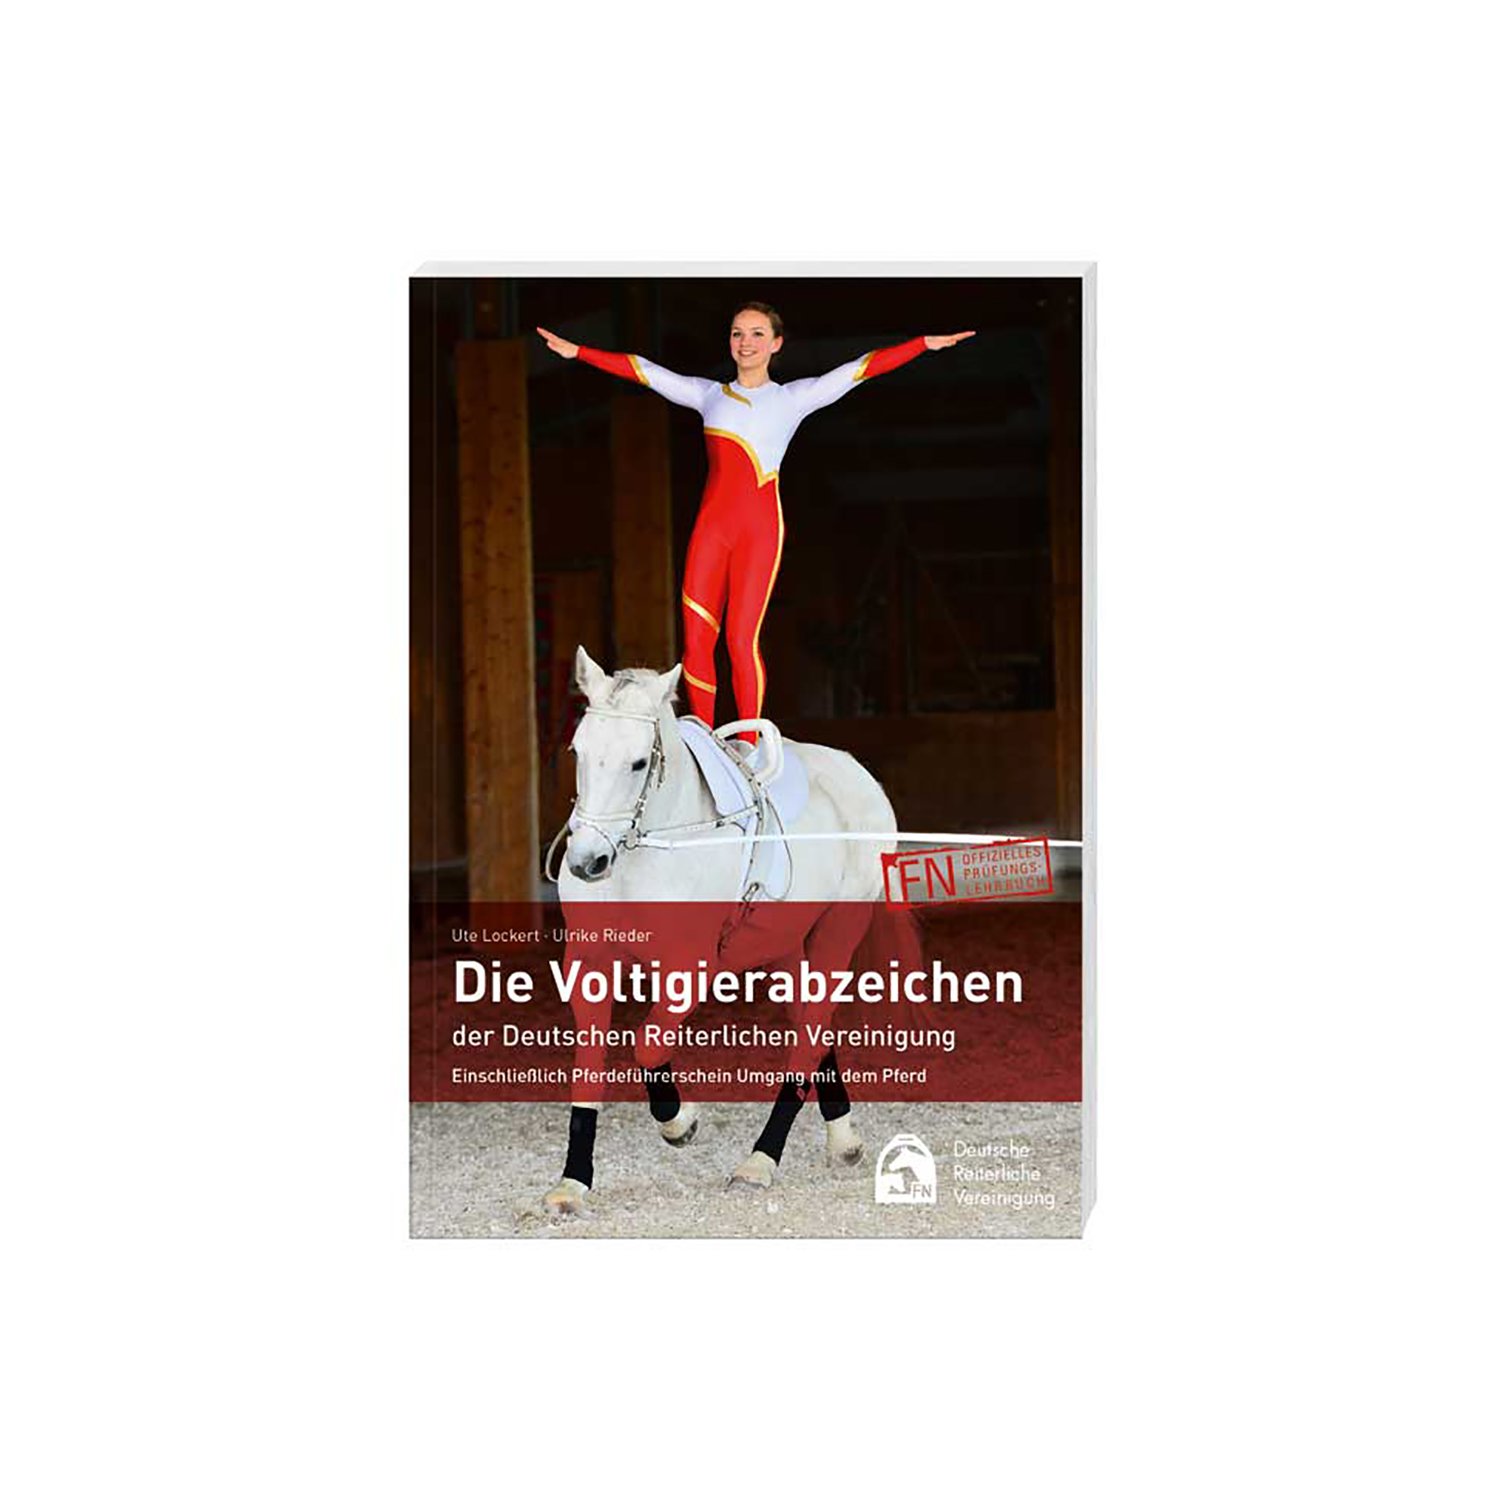 Die Voltigierabzeichen der Deutschen Reiterlichen Vereinigung, FNverlag 